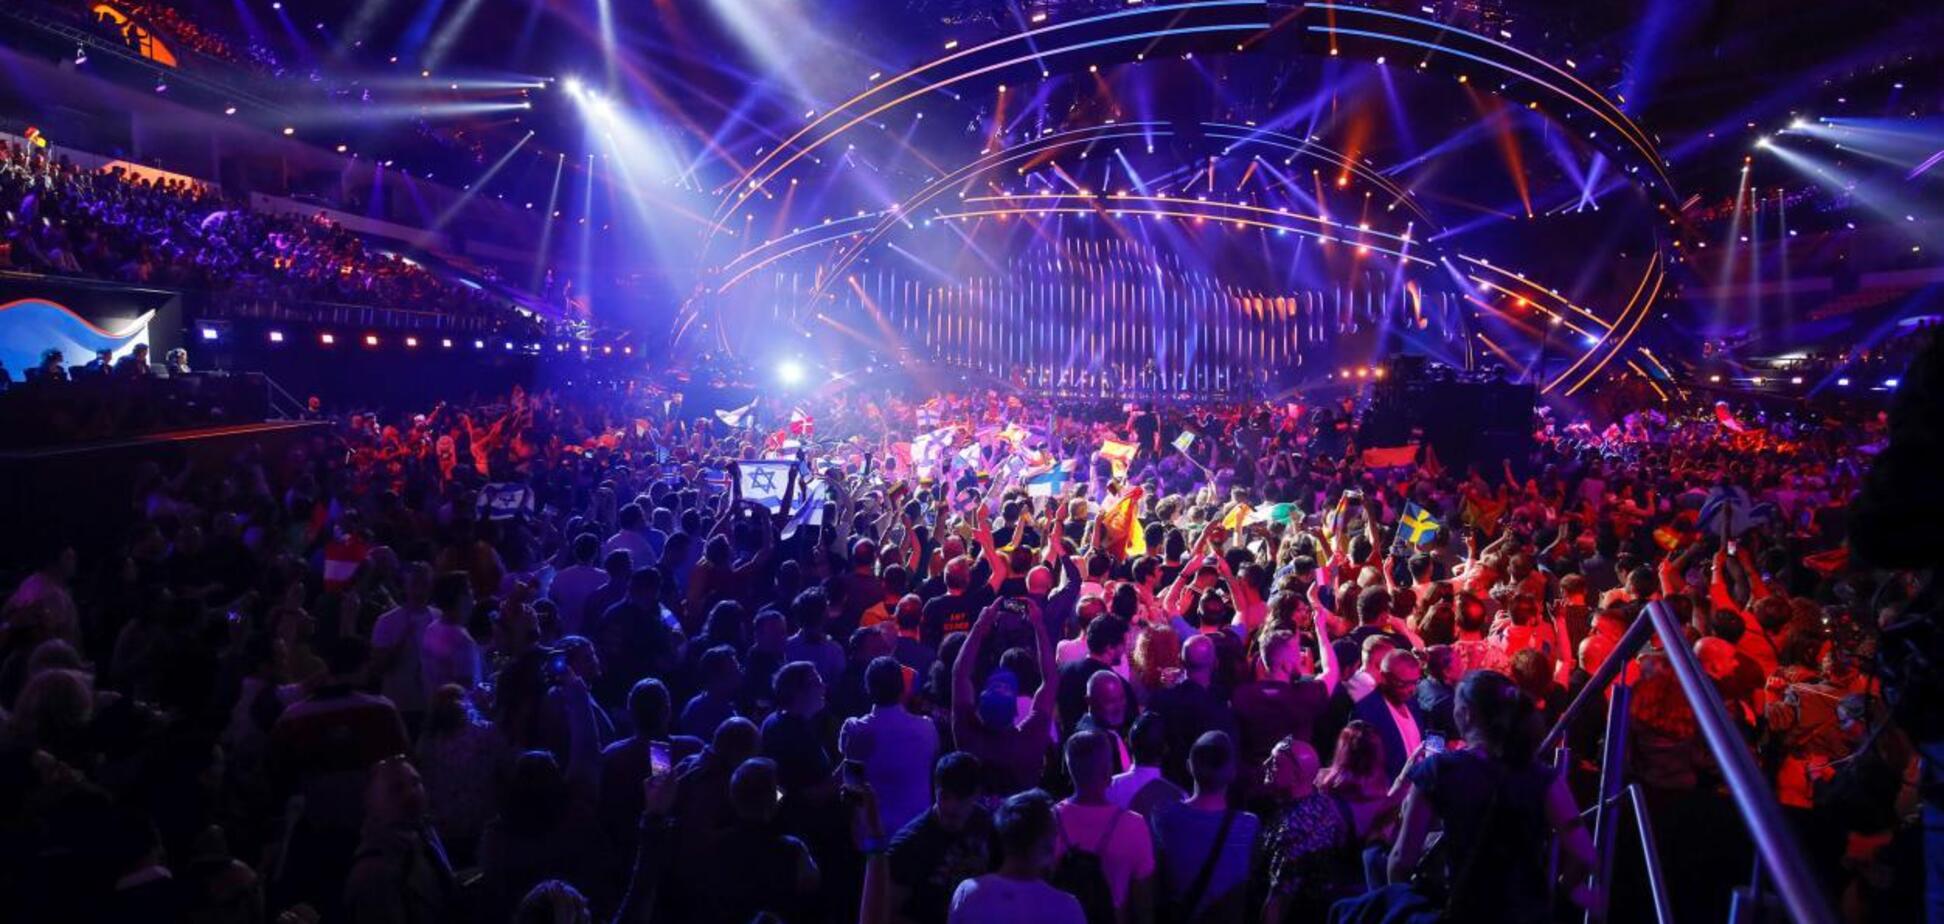 'Евровидение-2019': дату проведения конкурса внезапно перенесли